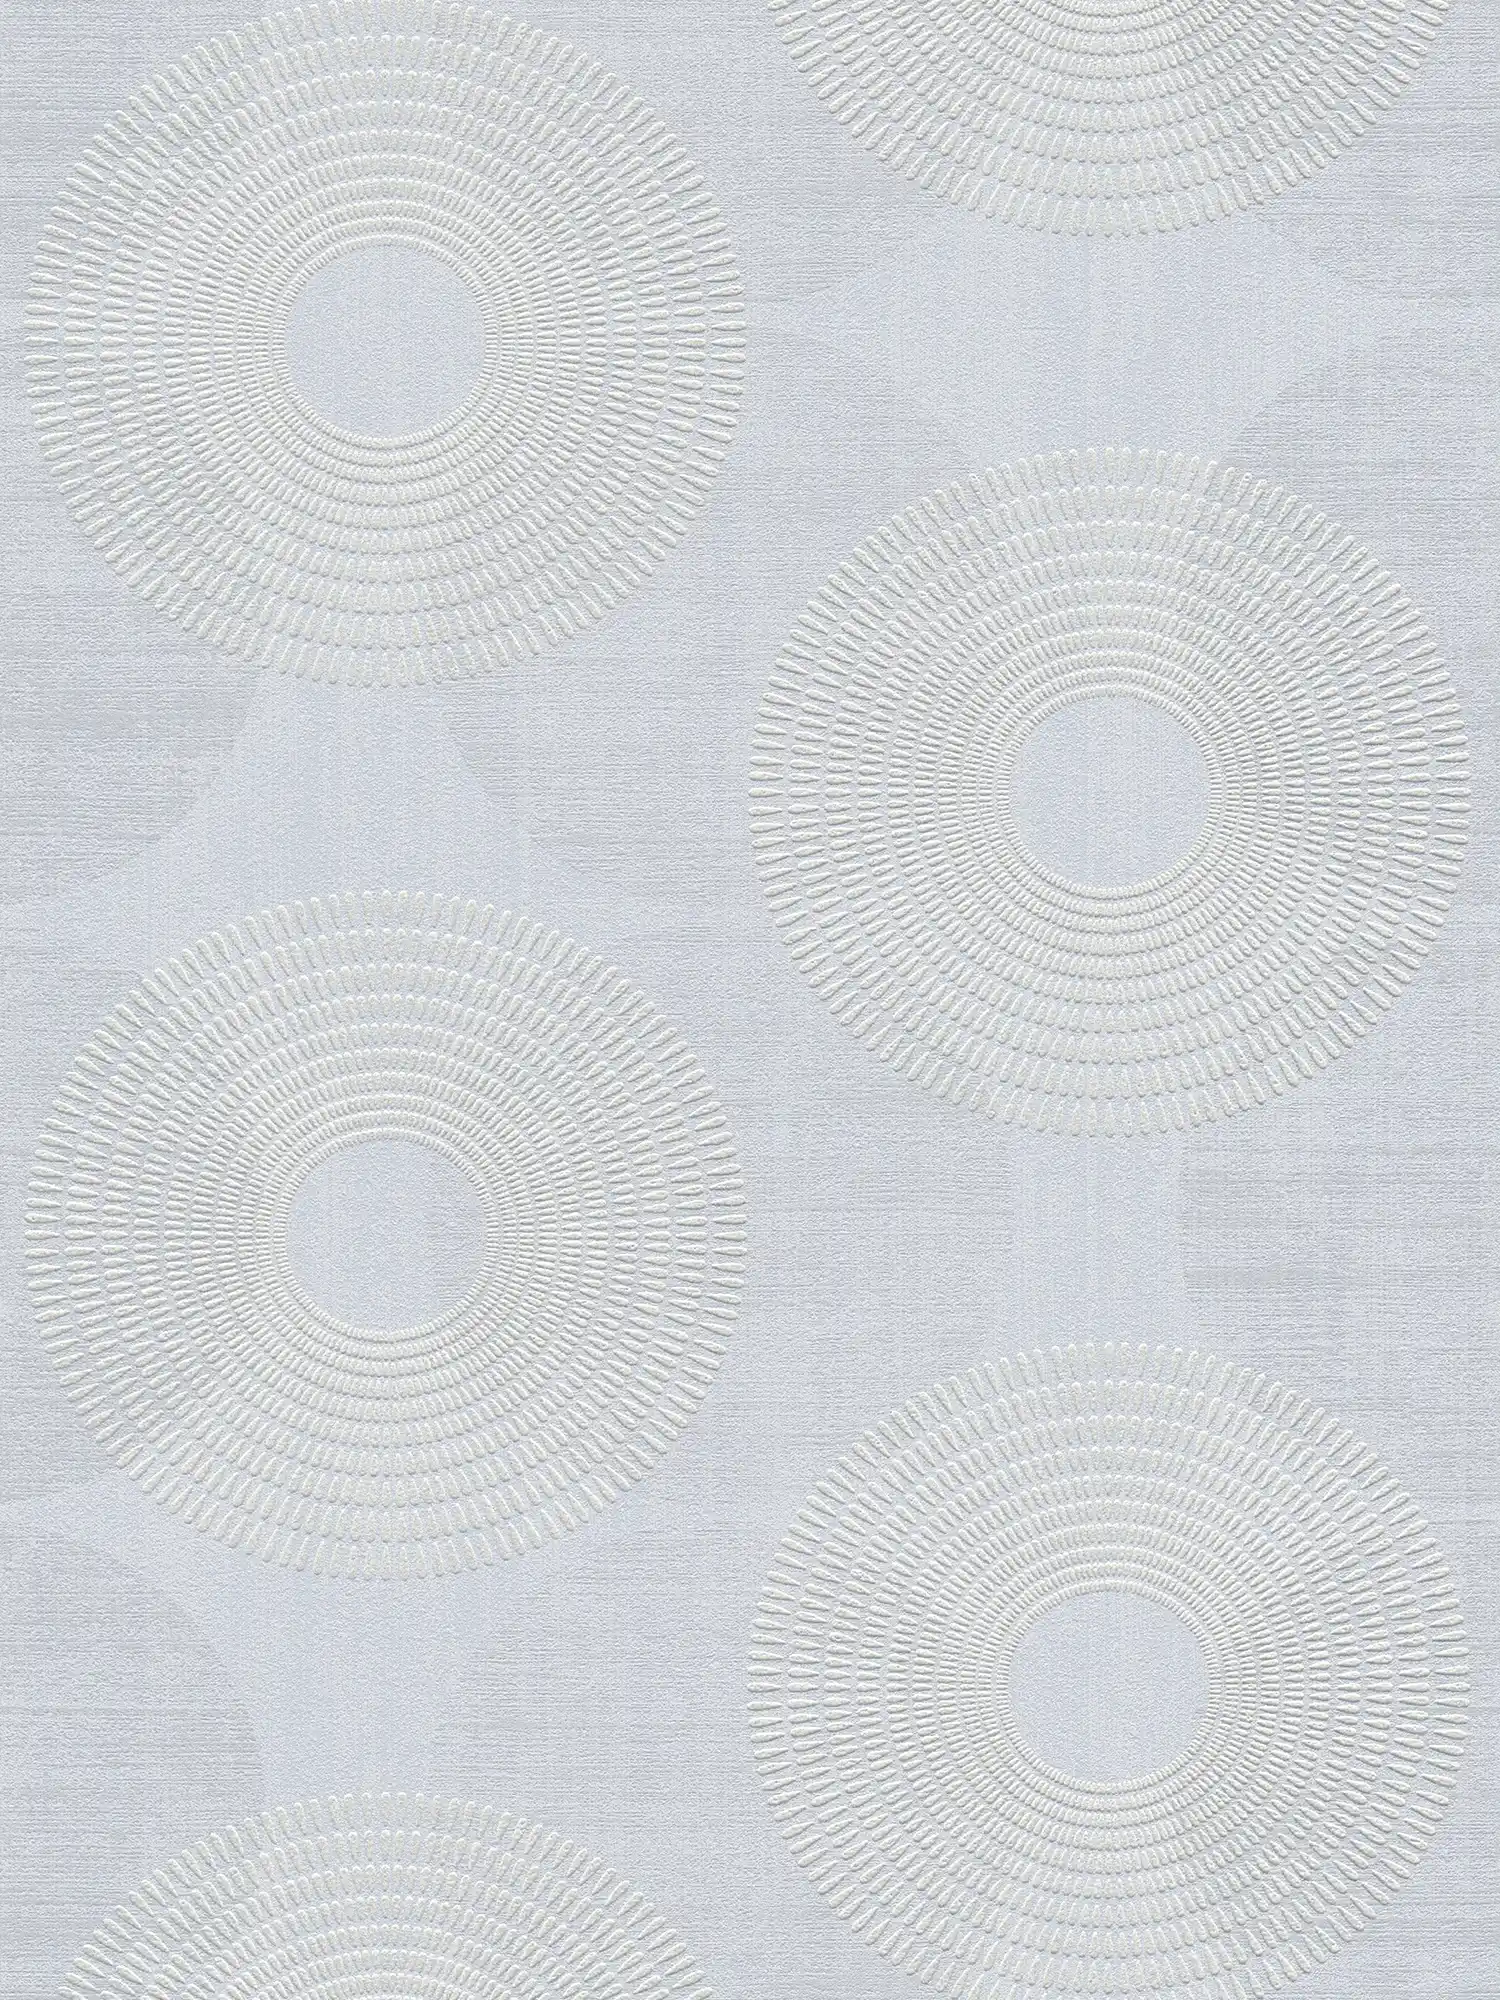 Carta da parati in tessuto non tessuto con disegno geometrico di cerchi - grigio
